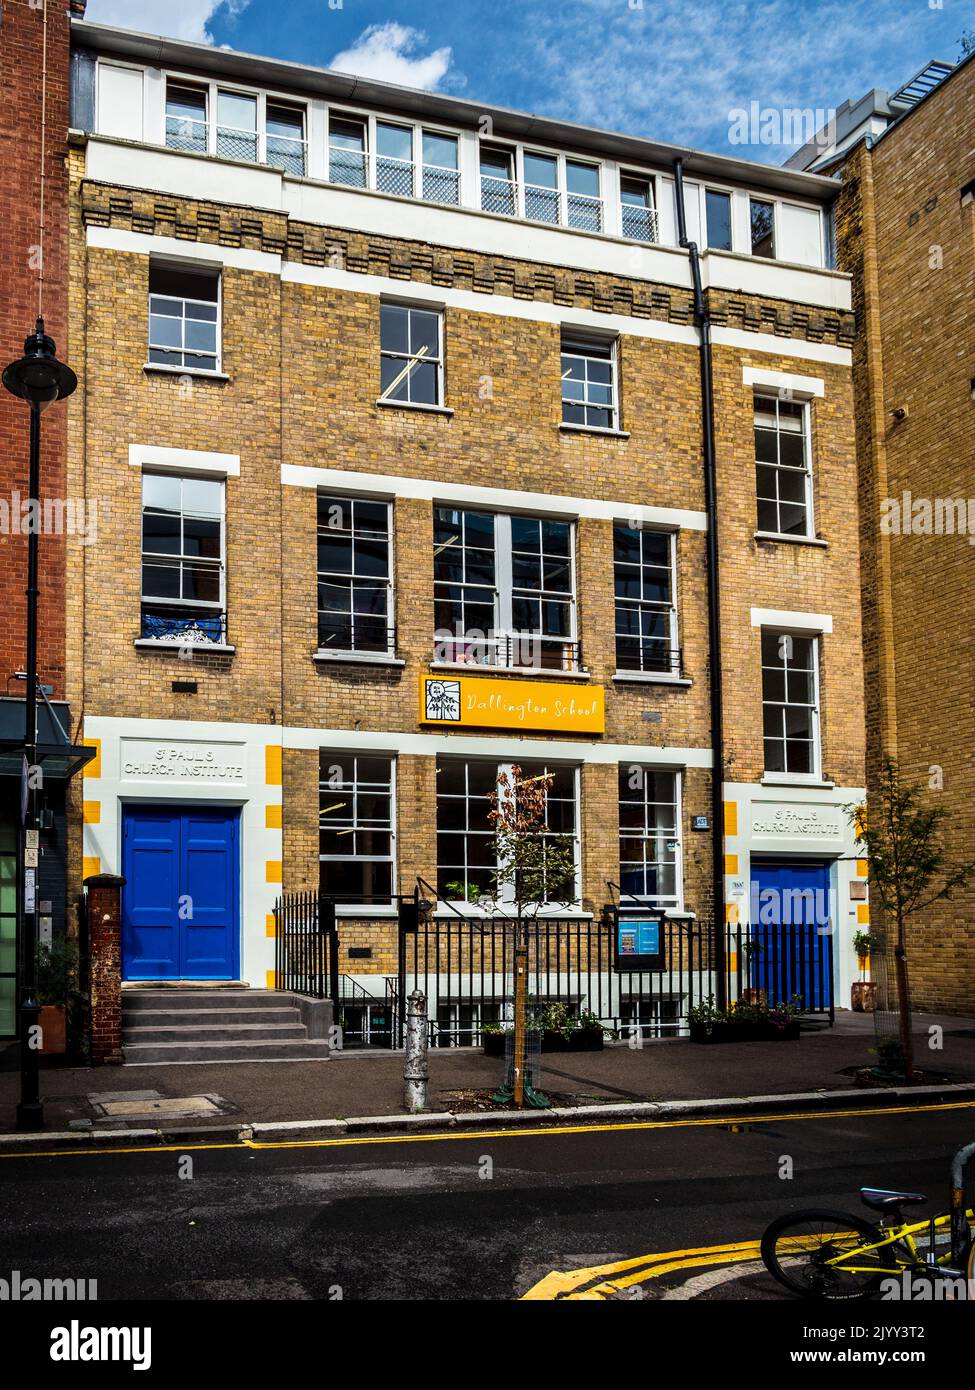 Dallington School Clerkenwell al numero 8 di Dallington Street, Clerkenwell, Central London. Scuola primaria indipendente e scuola materna a Clerkenwell, fondata nel 1978. Foto Stock